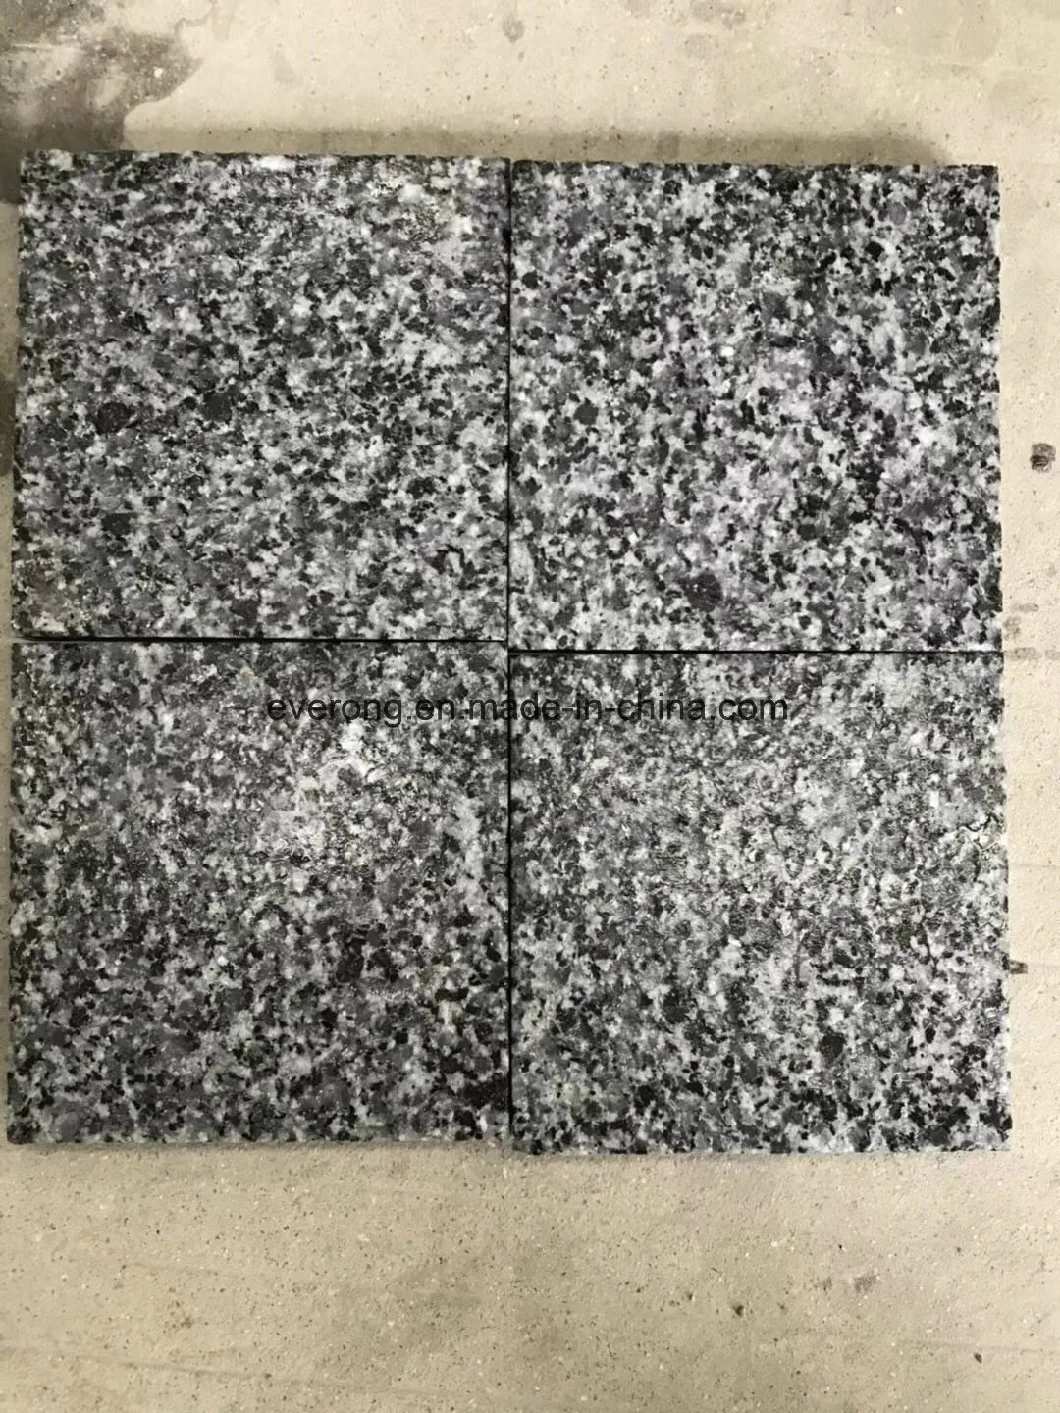 G654 Dark Grey Granite/Padang Dark Granite/ Impala Dark Granite Floor Tile / Paving Stone